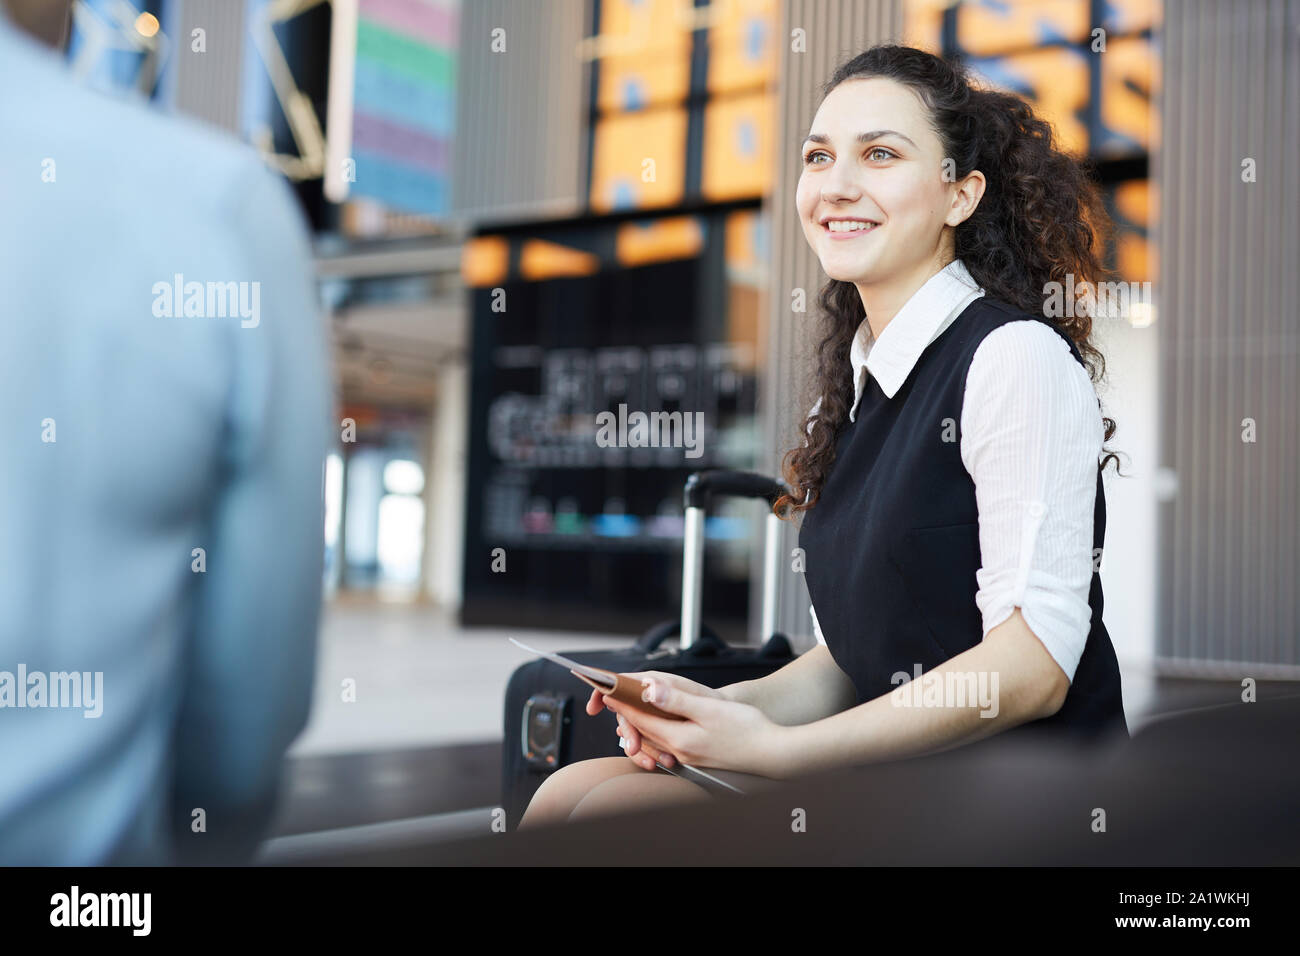 Ritratto di sorridente giovane donna in aeroporto in sala d'attesa godendo di conversazione con un amico, spazio copia Foto Stock